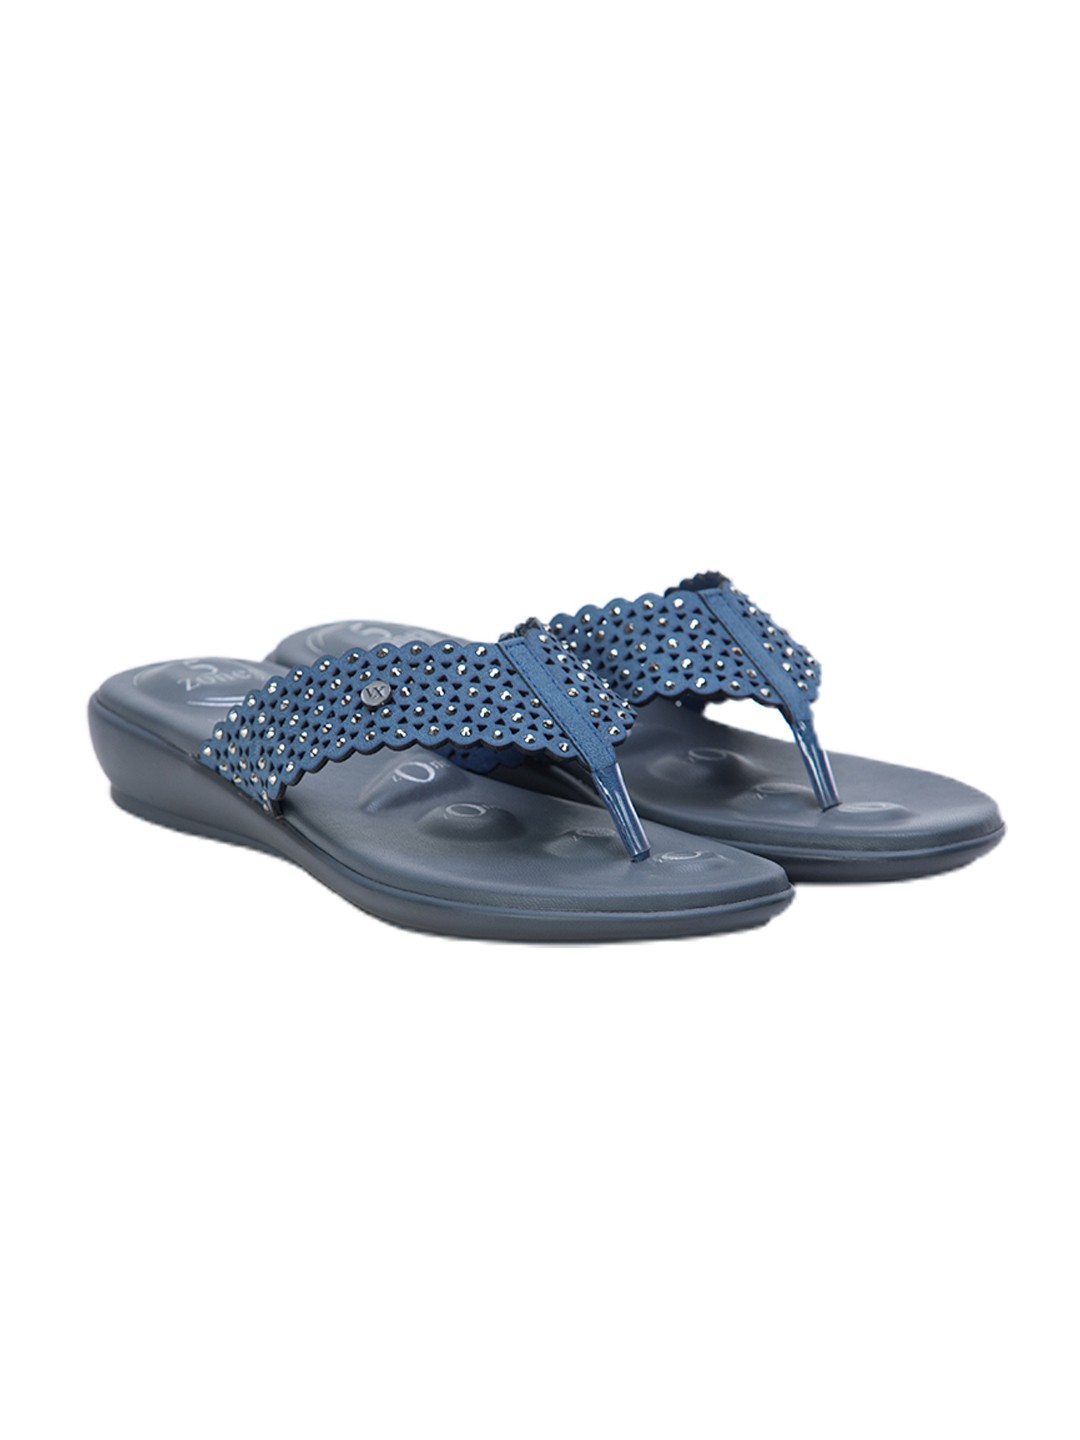 Buy Von Wellx Germany Comfort Gleam Blue Slippers Online in Rajasthan